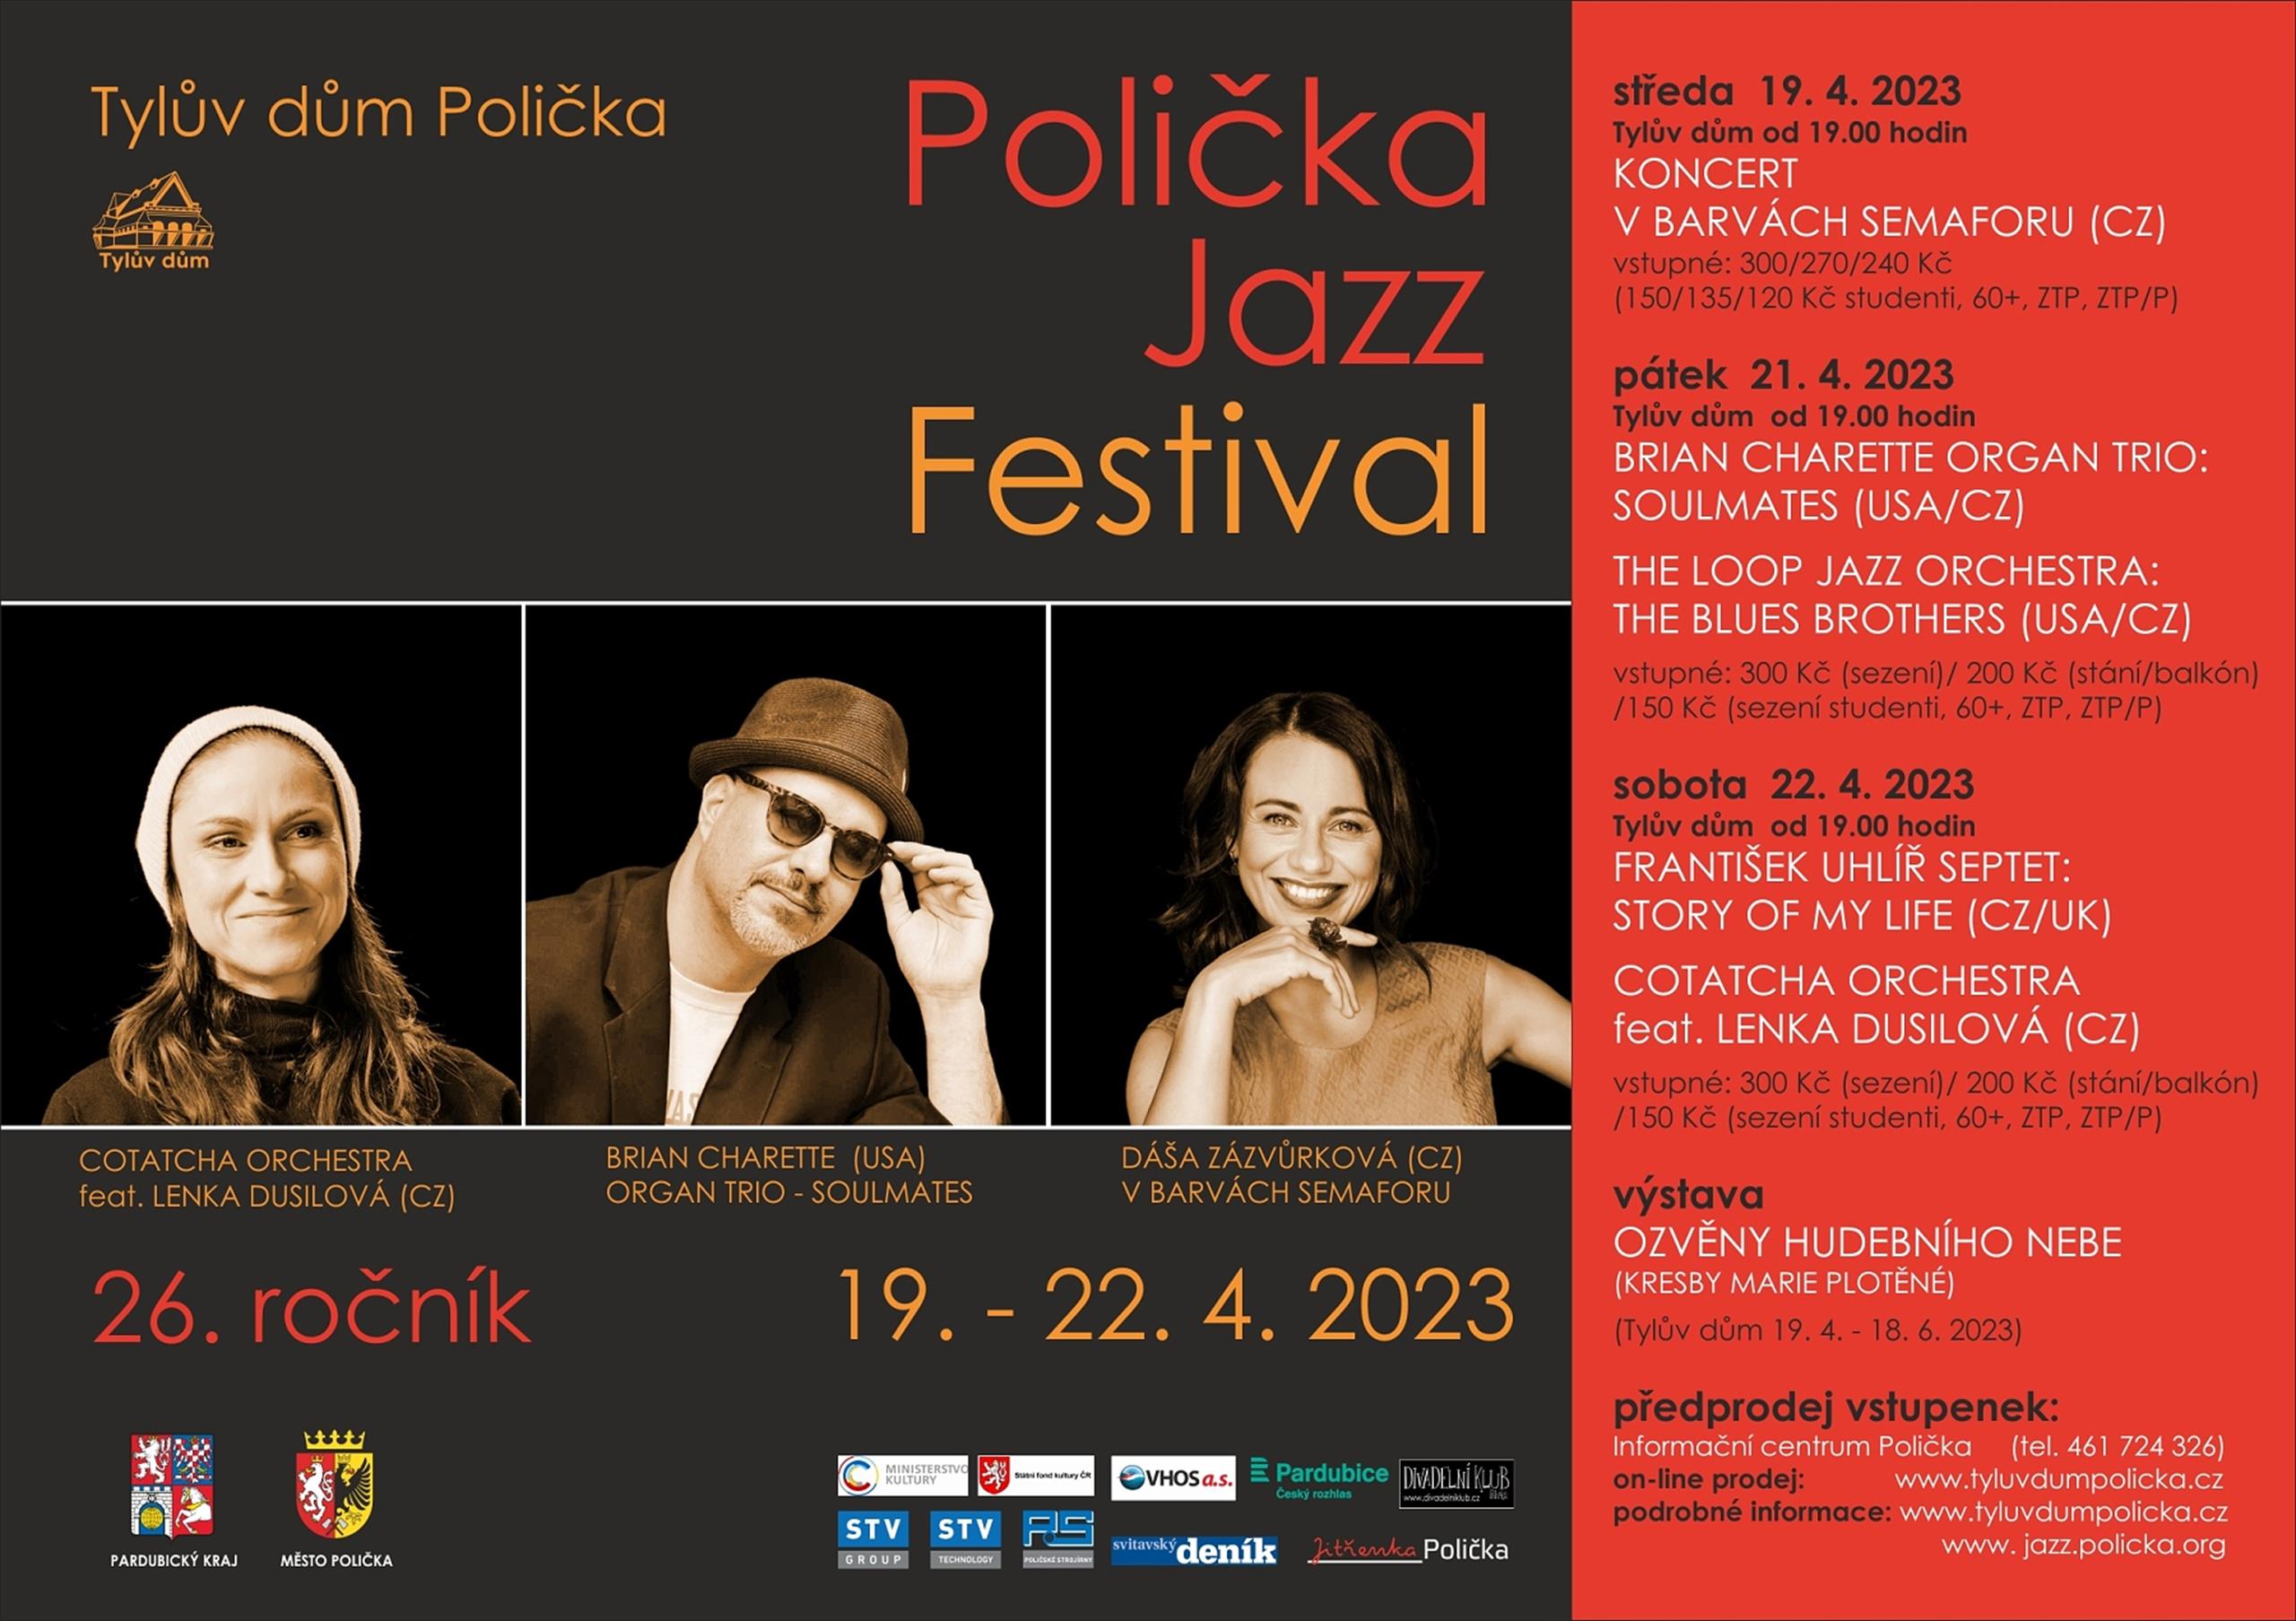 Polička Jazz Festival 2023 